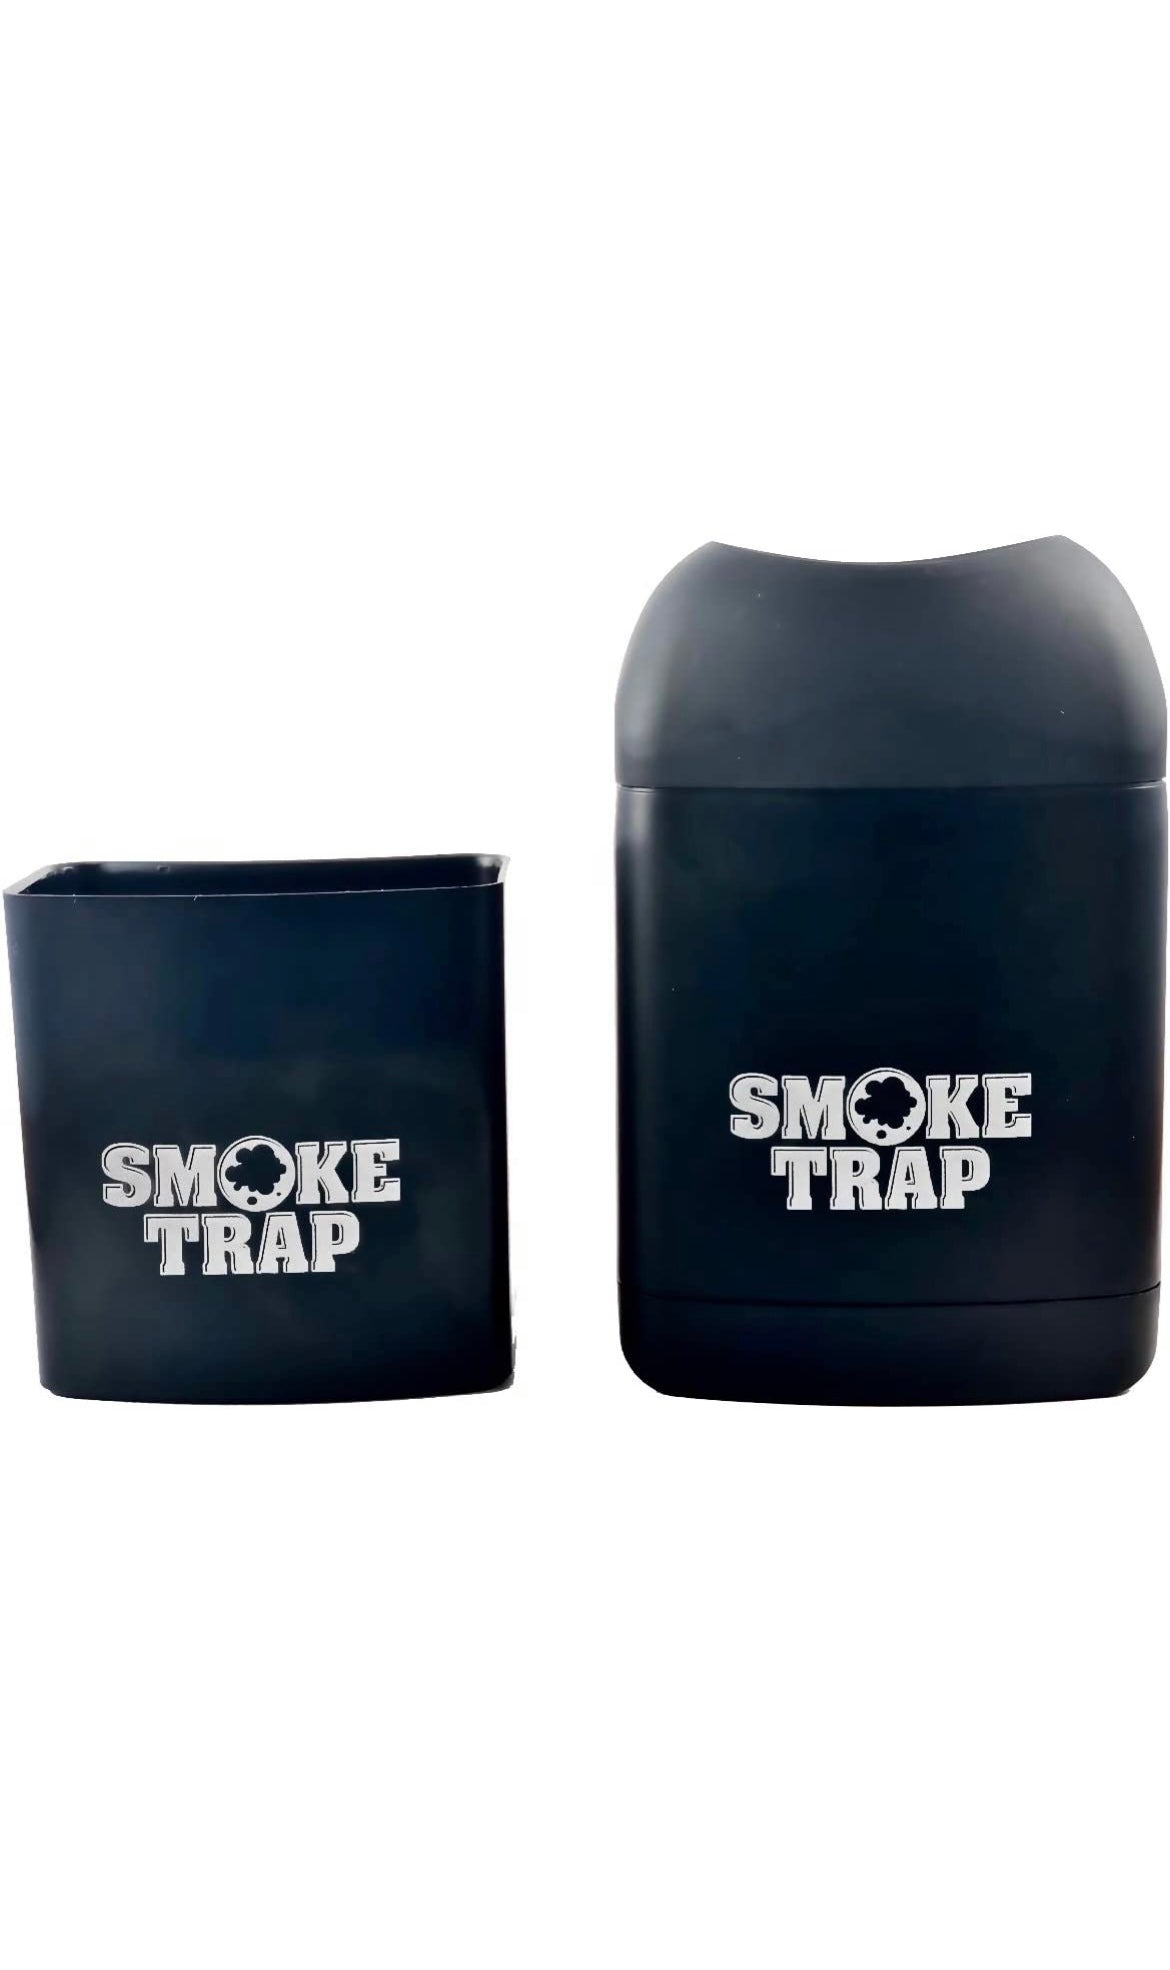 Smoke Trap - The smaller pocket sized smoke trap 2.0 is